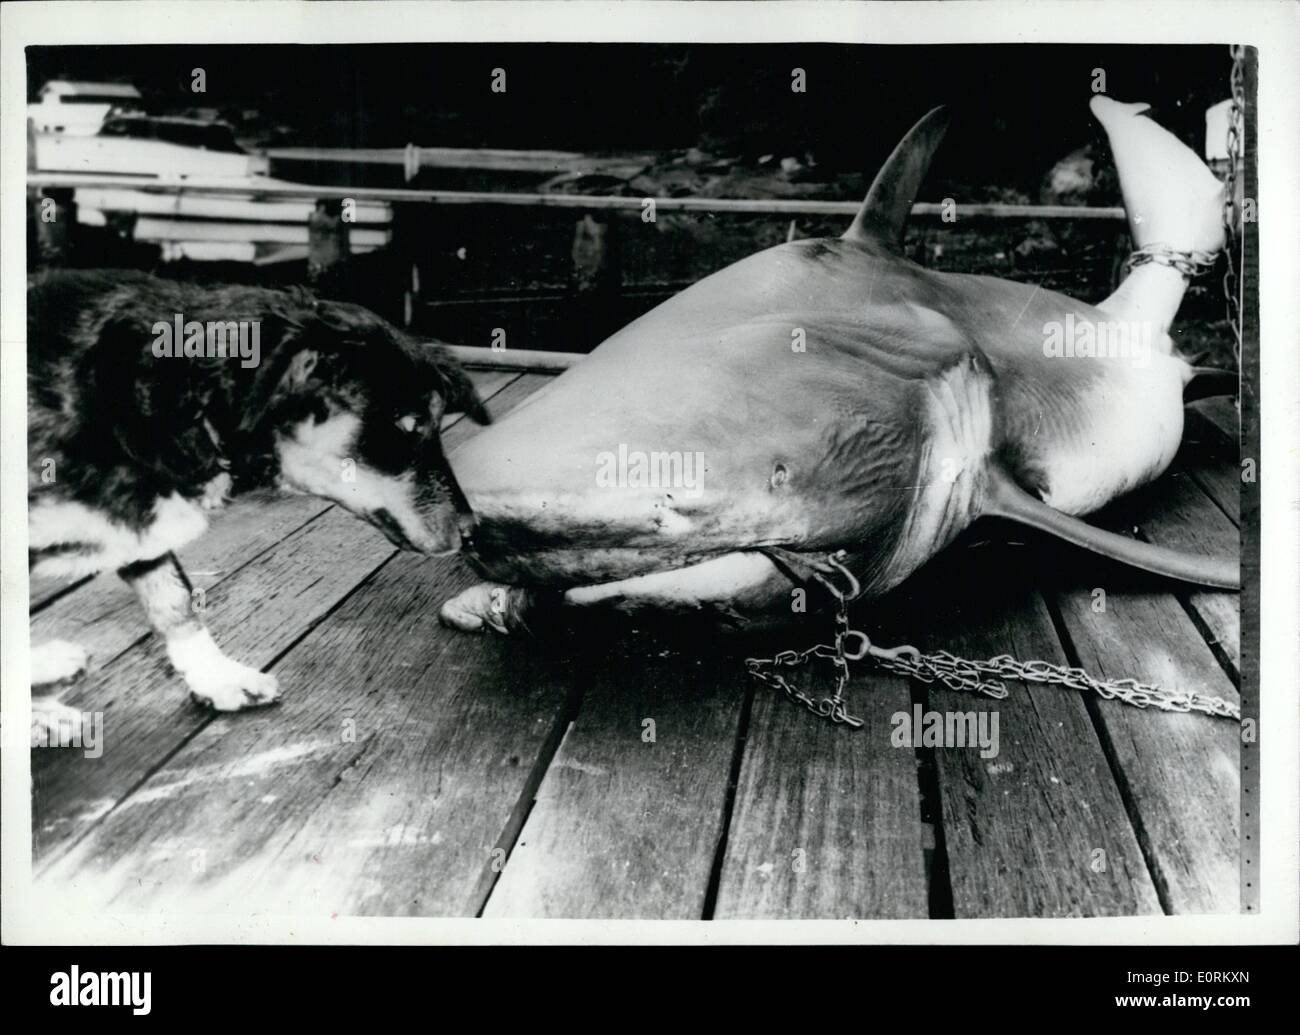 Enero 01, 1960 - no estoy realmente asustado.... o soy yo? El perro y el tiburón asesino... Un tiburón de 10 pies quedó atrapado en medio del puerto de Sydney, Australia recientemente -cerca del lugar en el que trece años Kenneth Murray había sido atacado pocos días antes. El chico de la pierna derecha tuvo que ser amputada, tras el ataque - y su condición es crítica. Los pescadores que capturó el tiburón están convencidos de que es la criatura que hizo el ataque. Se corta abierta en un esfuerzo por demostrar que es el agresor. Foto de stock